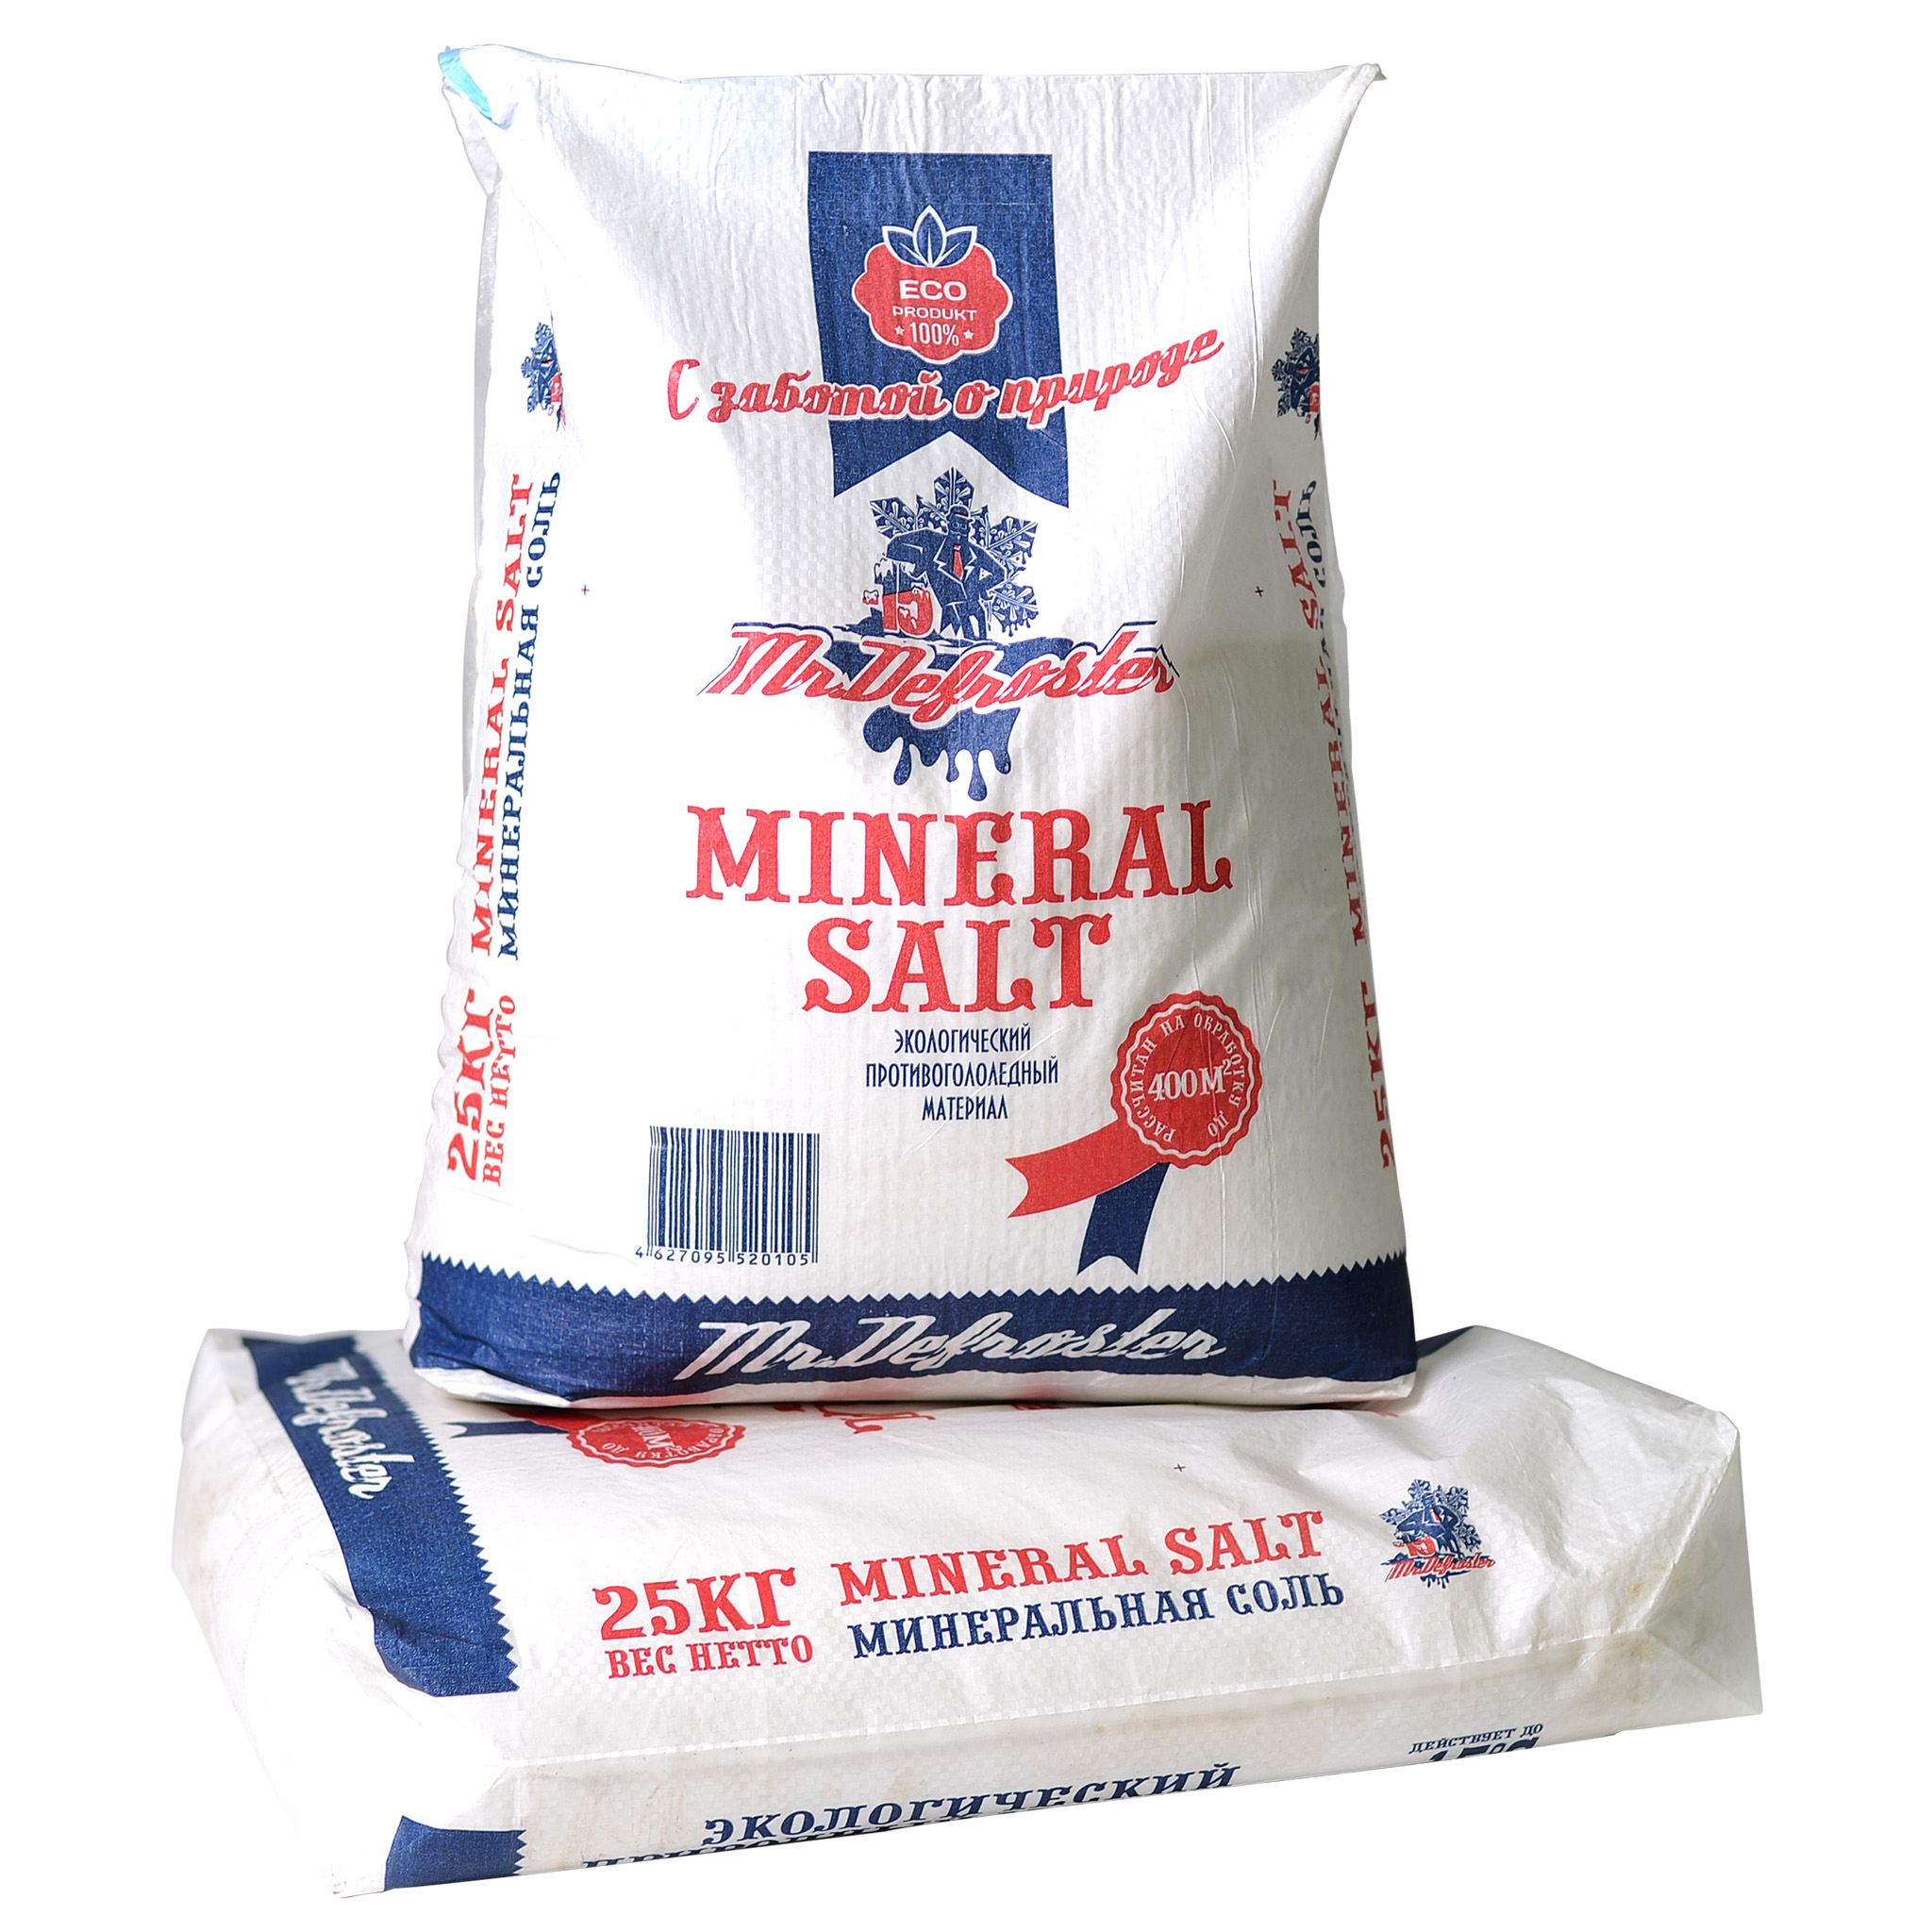 Противогололедный реагент сыпучий Mineral salt, 25 кг